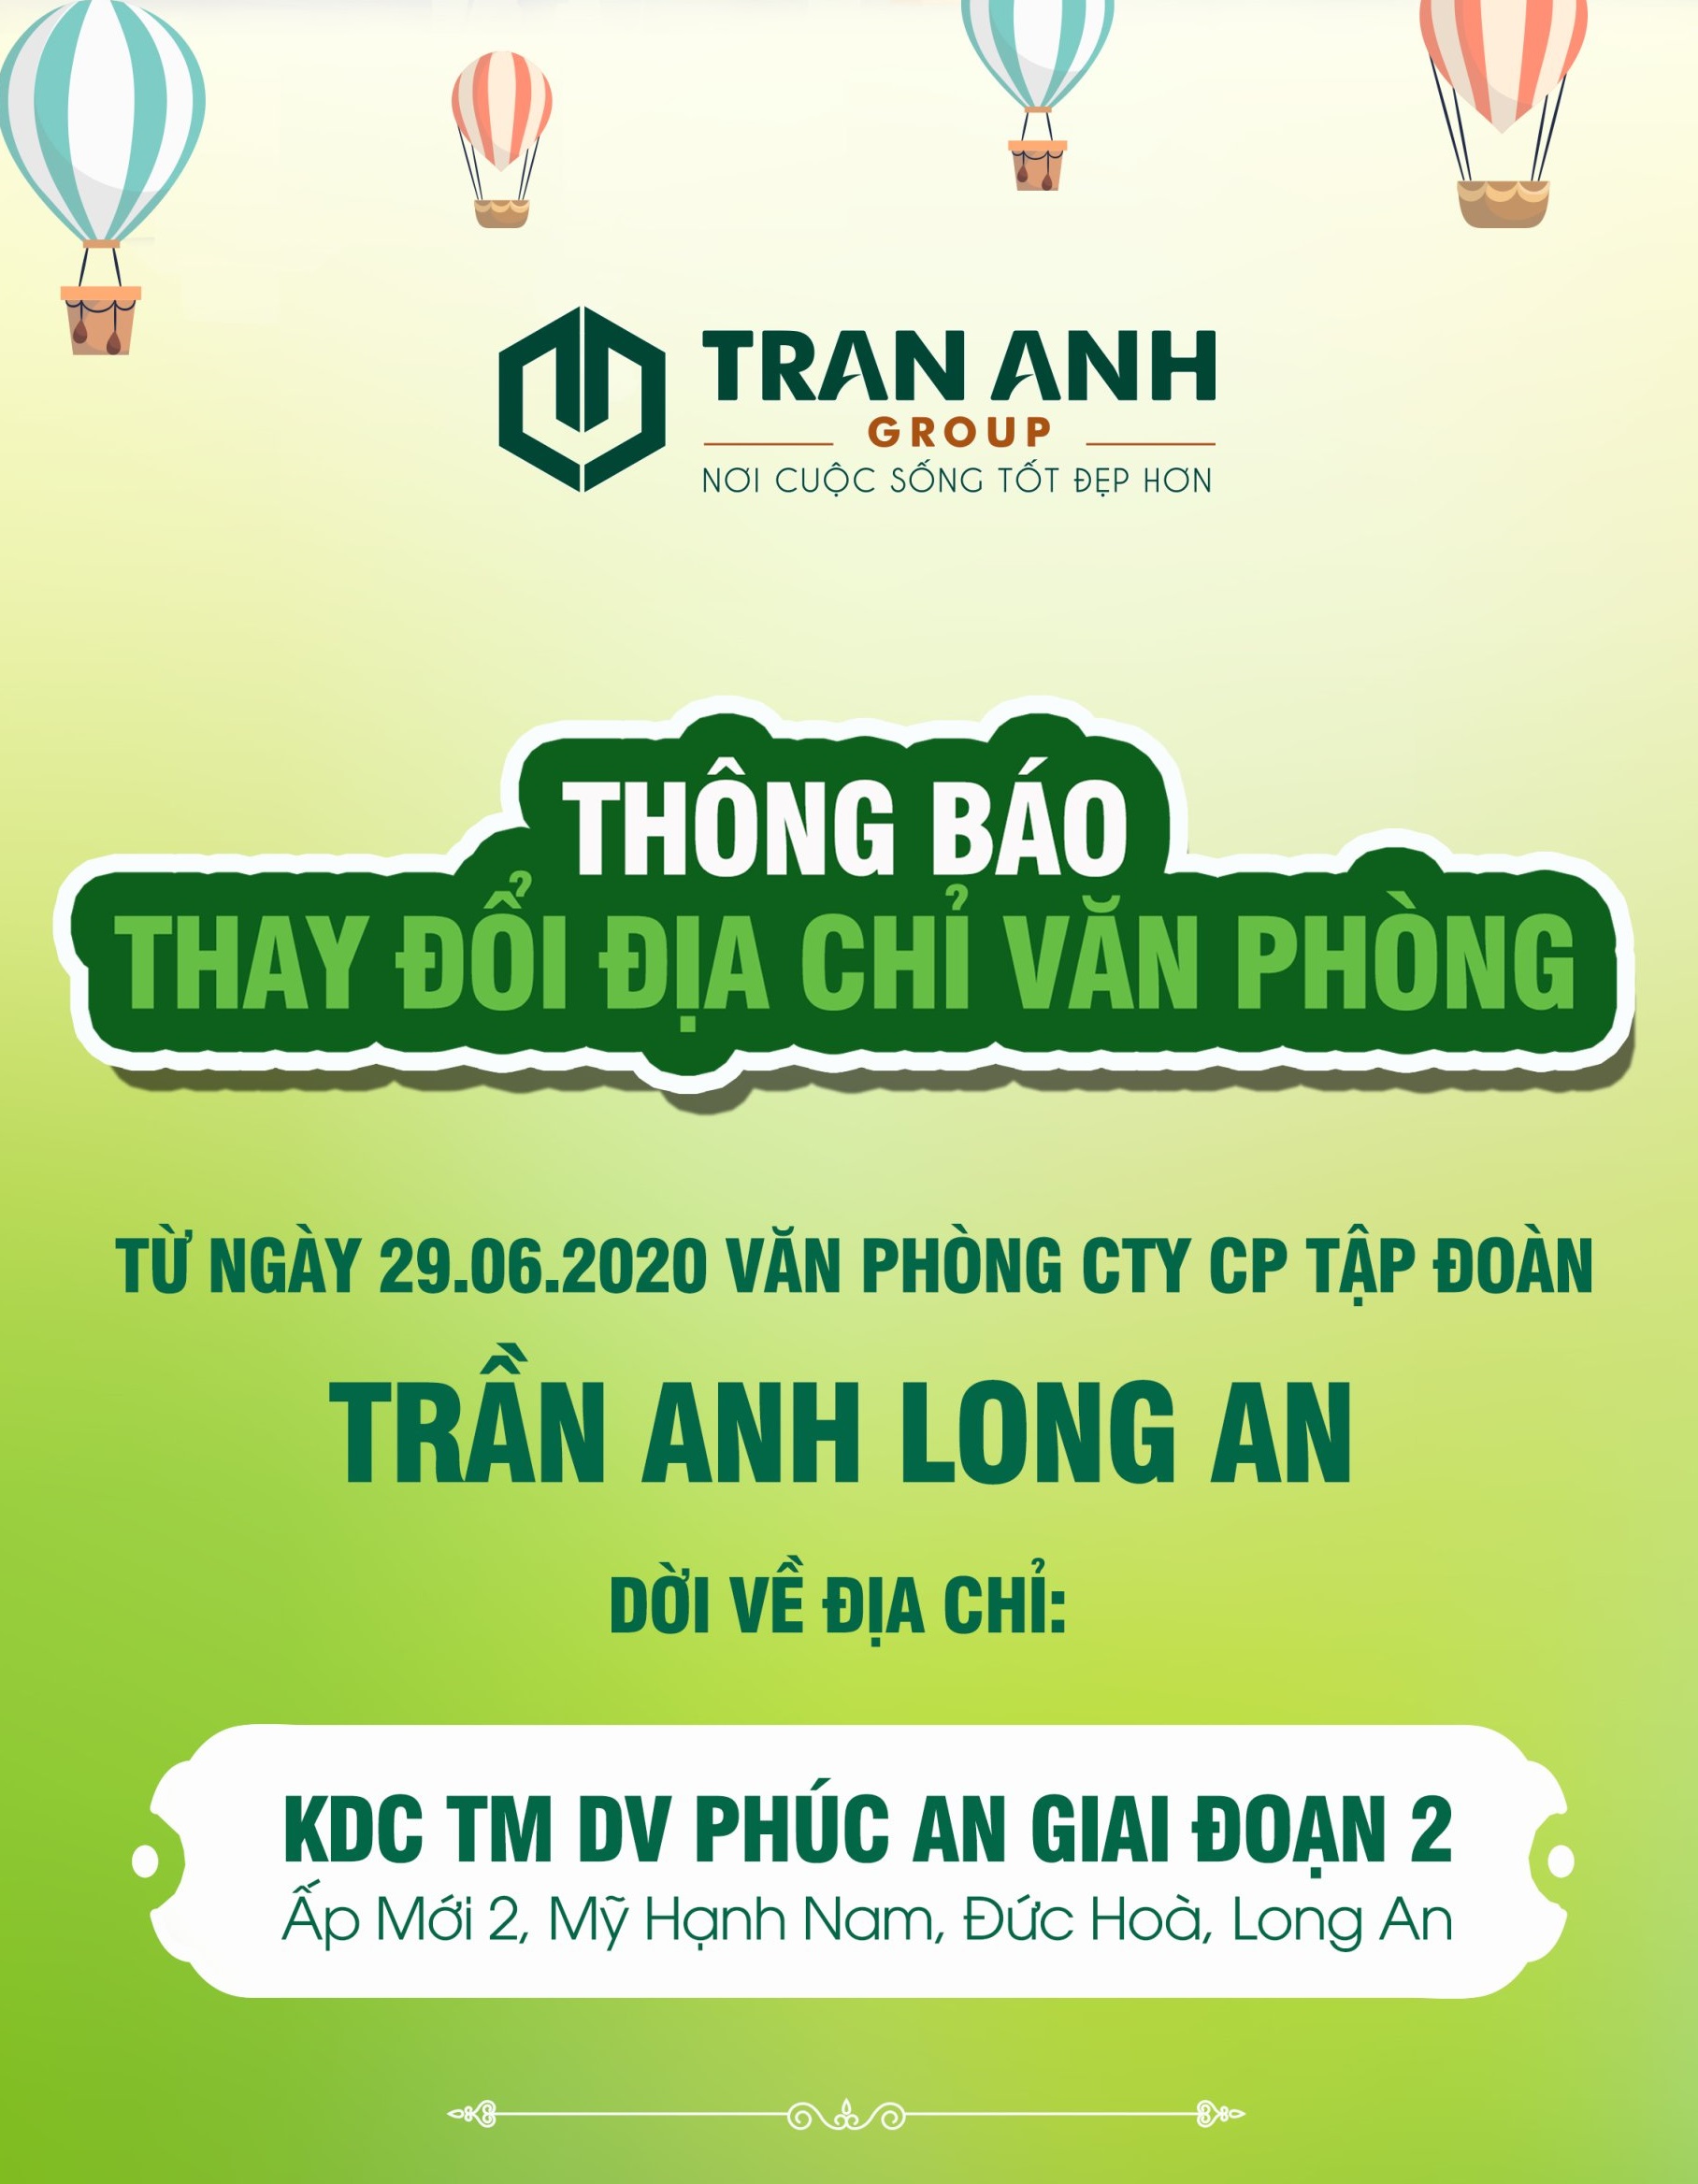 Thông báo dời địa chỉ công ty Trần Anh Long An